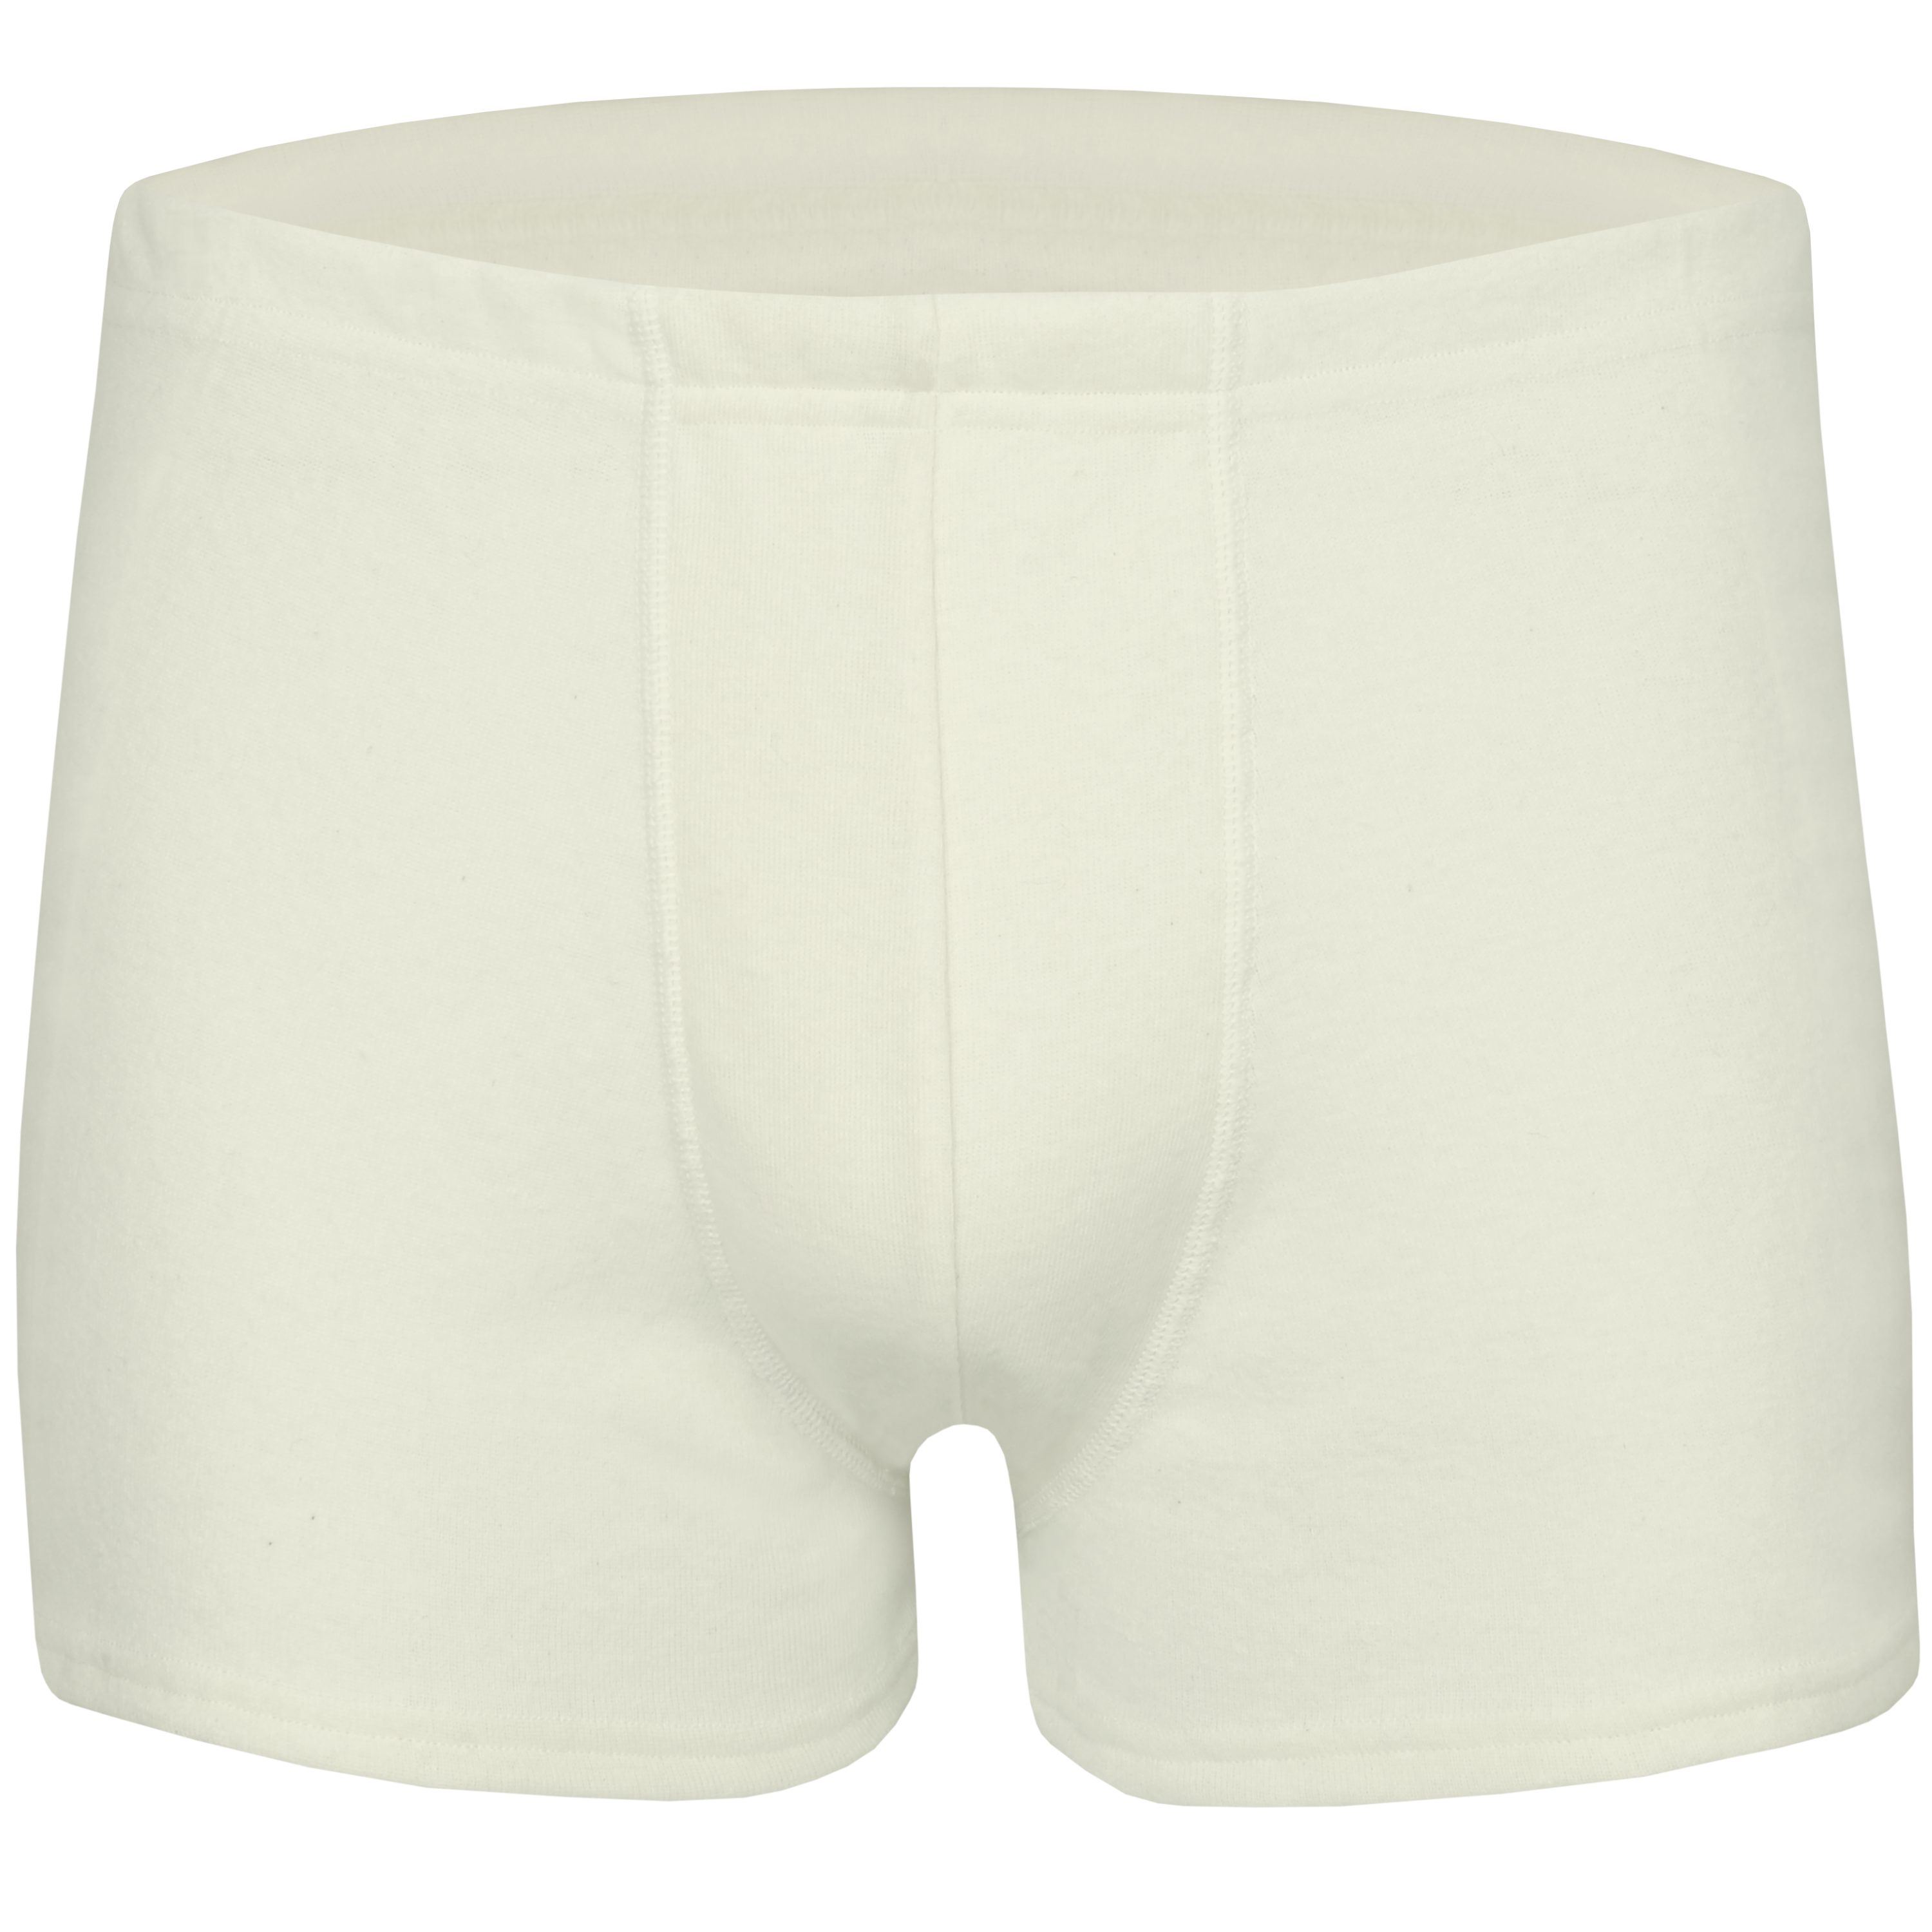 wobera NATUR Lange Unterhose für Herren / Herrenunterhose ohne Eingriff mit  Schurwolle und Seide